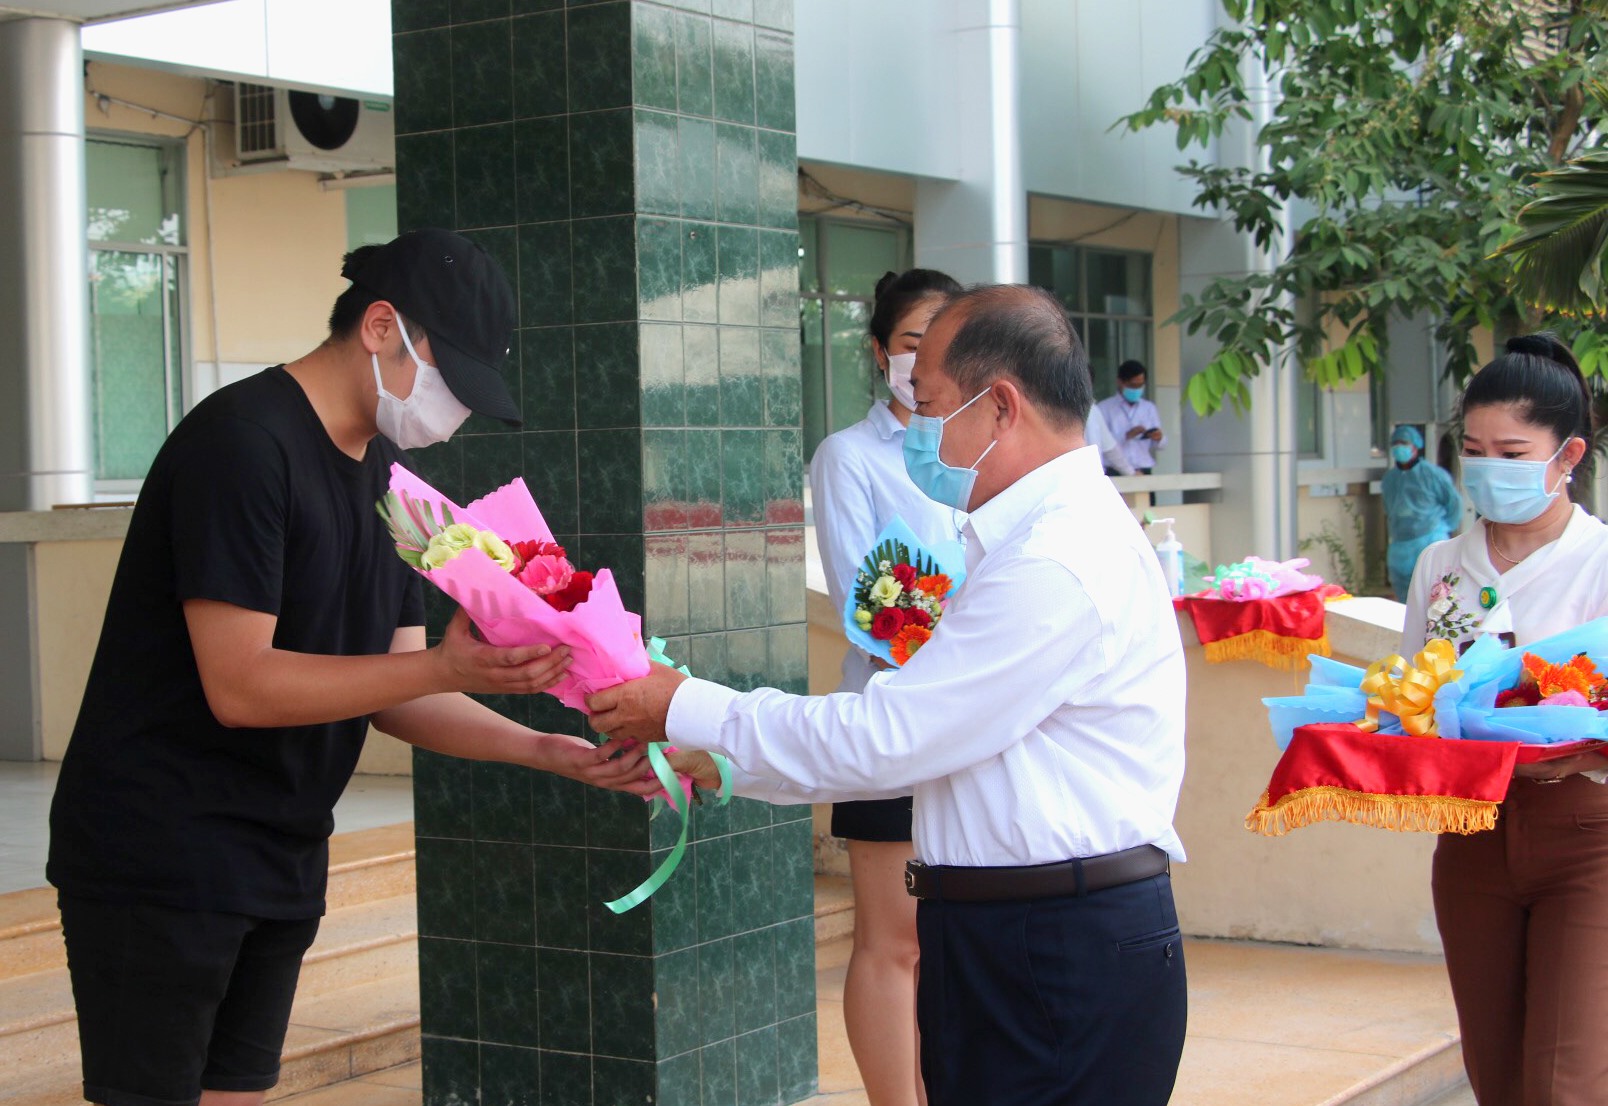 Phó Chủ tịch UBND tỉnh Đồng Tháp Đoàn Tấn Bửu tặng hoa cho các công dân nhận Giấy chứng nhận hoàn thành thời gian cách ly. Ảnh: LT